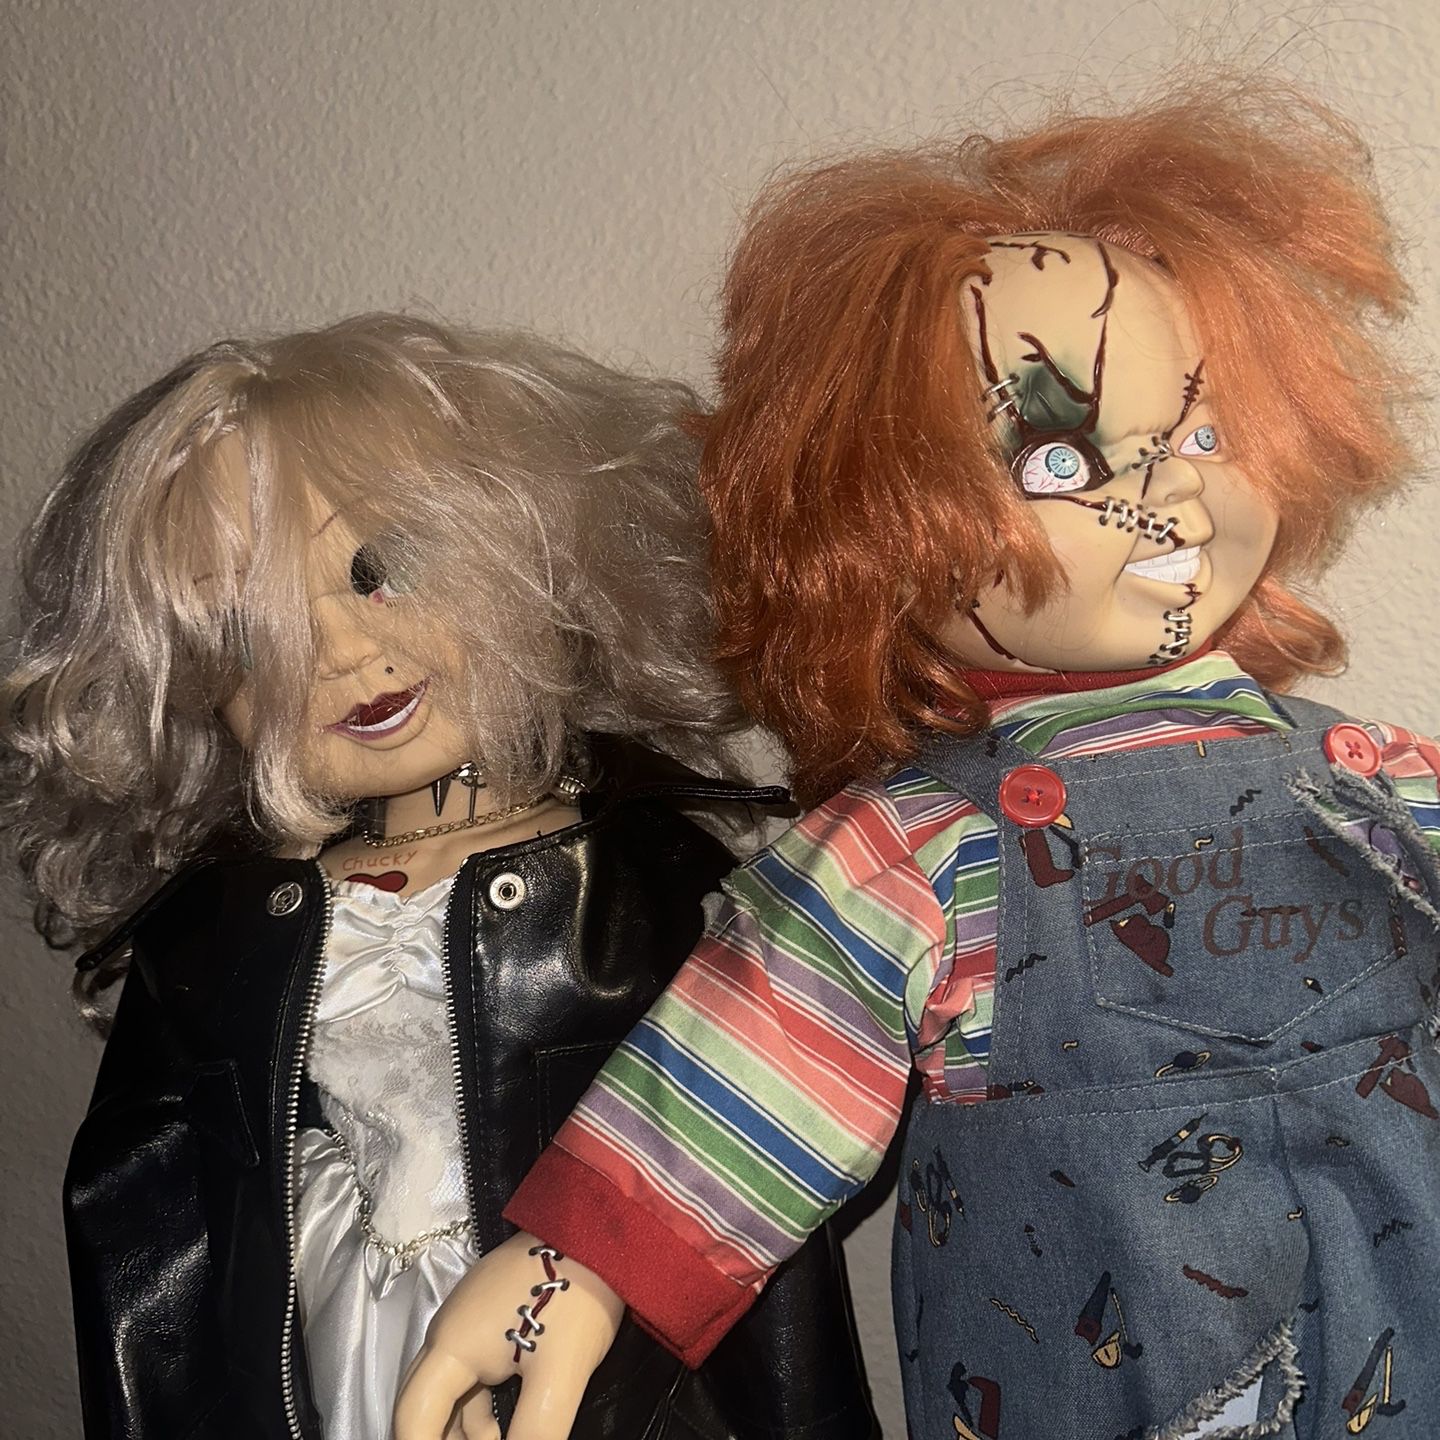 Chucky And Tiffany Dolls